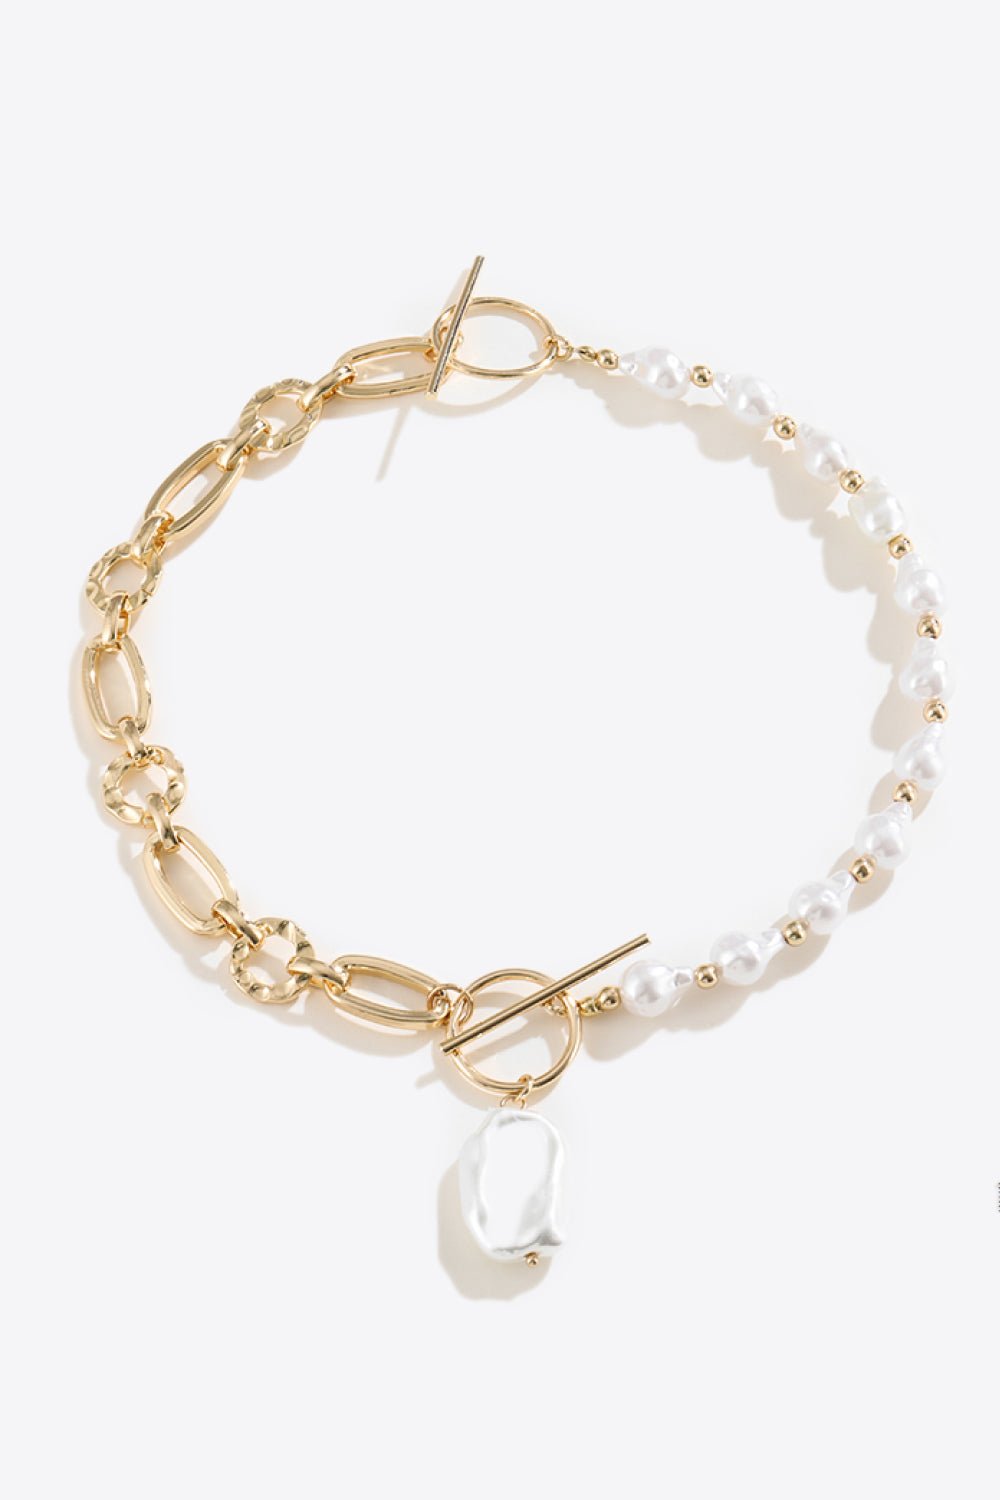 Half Pearl Half Chain Toggle Clasp Necklace - London's Closet Boutique